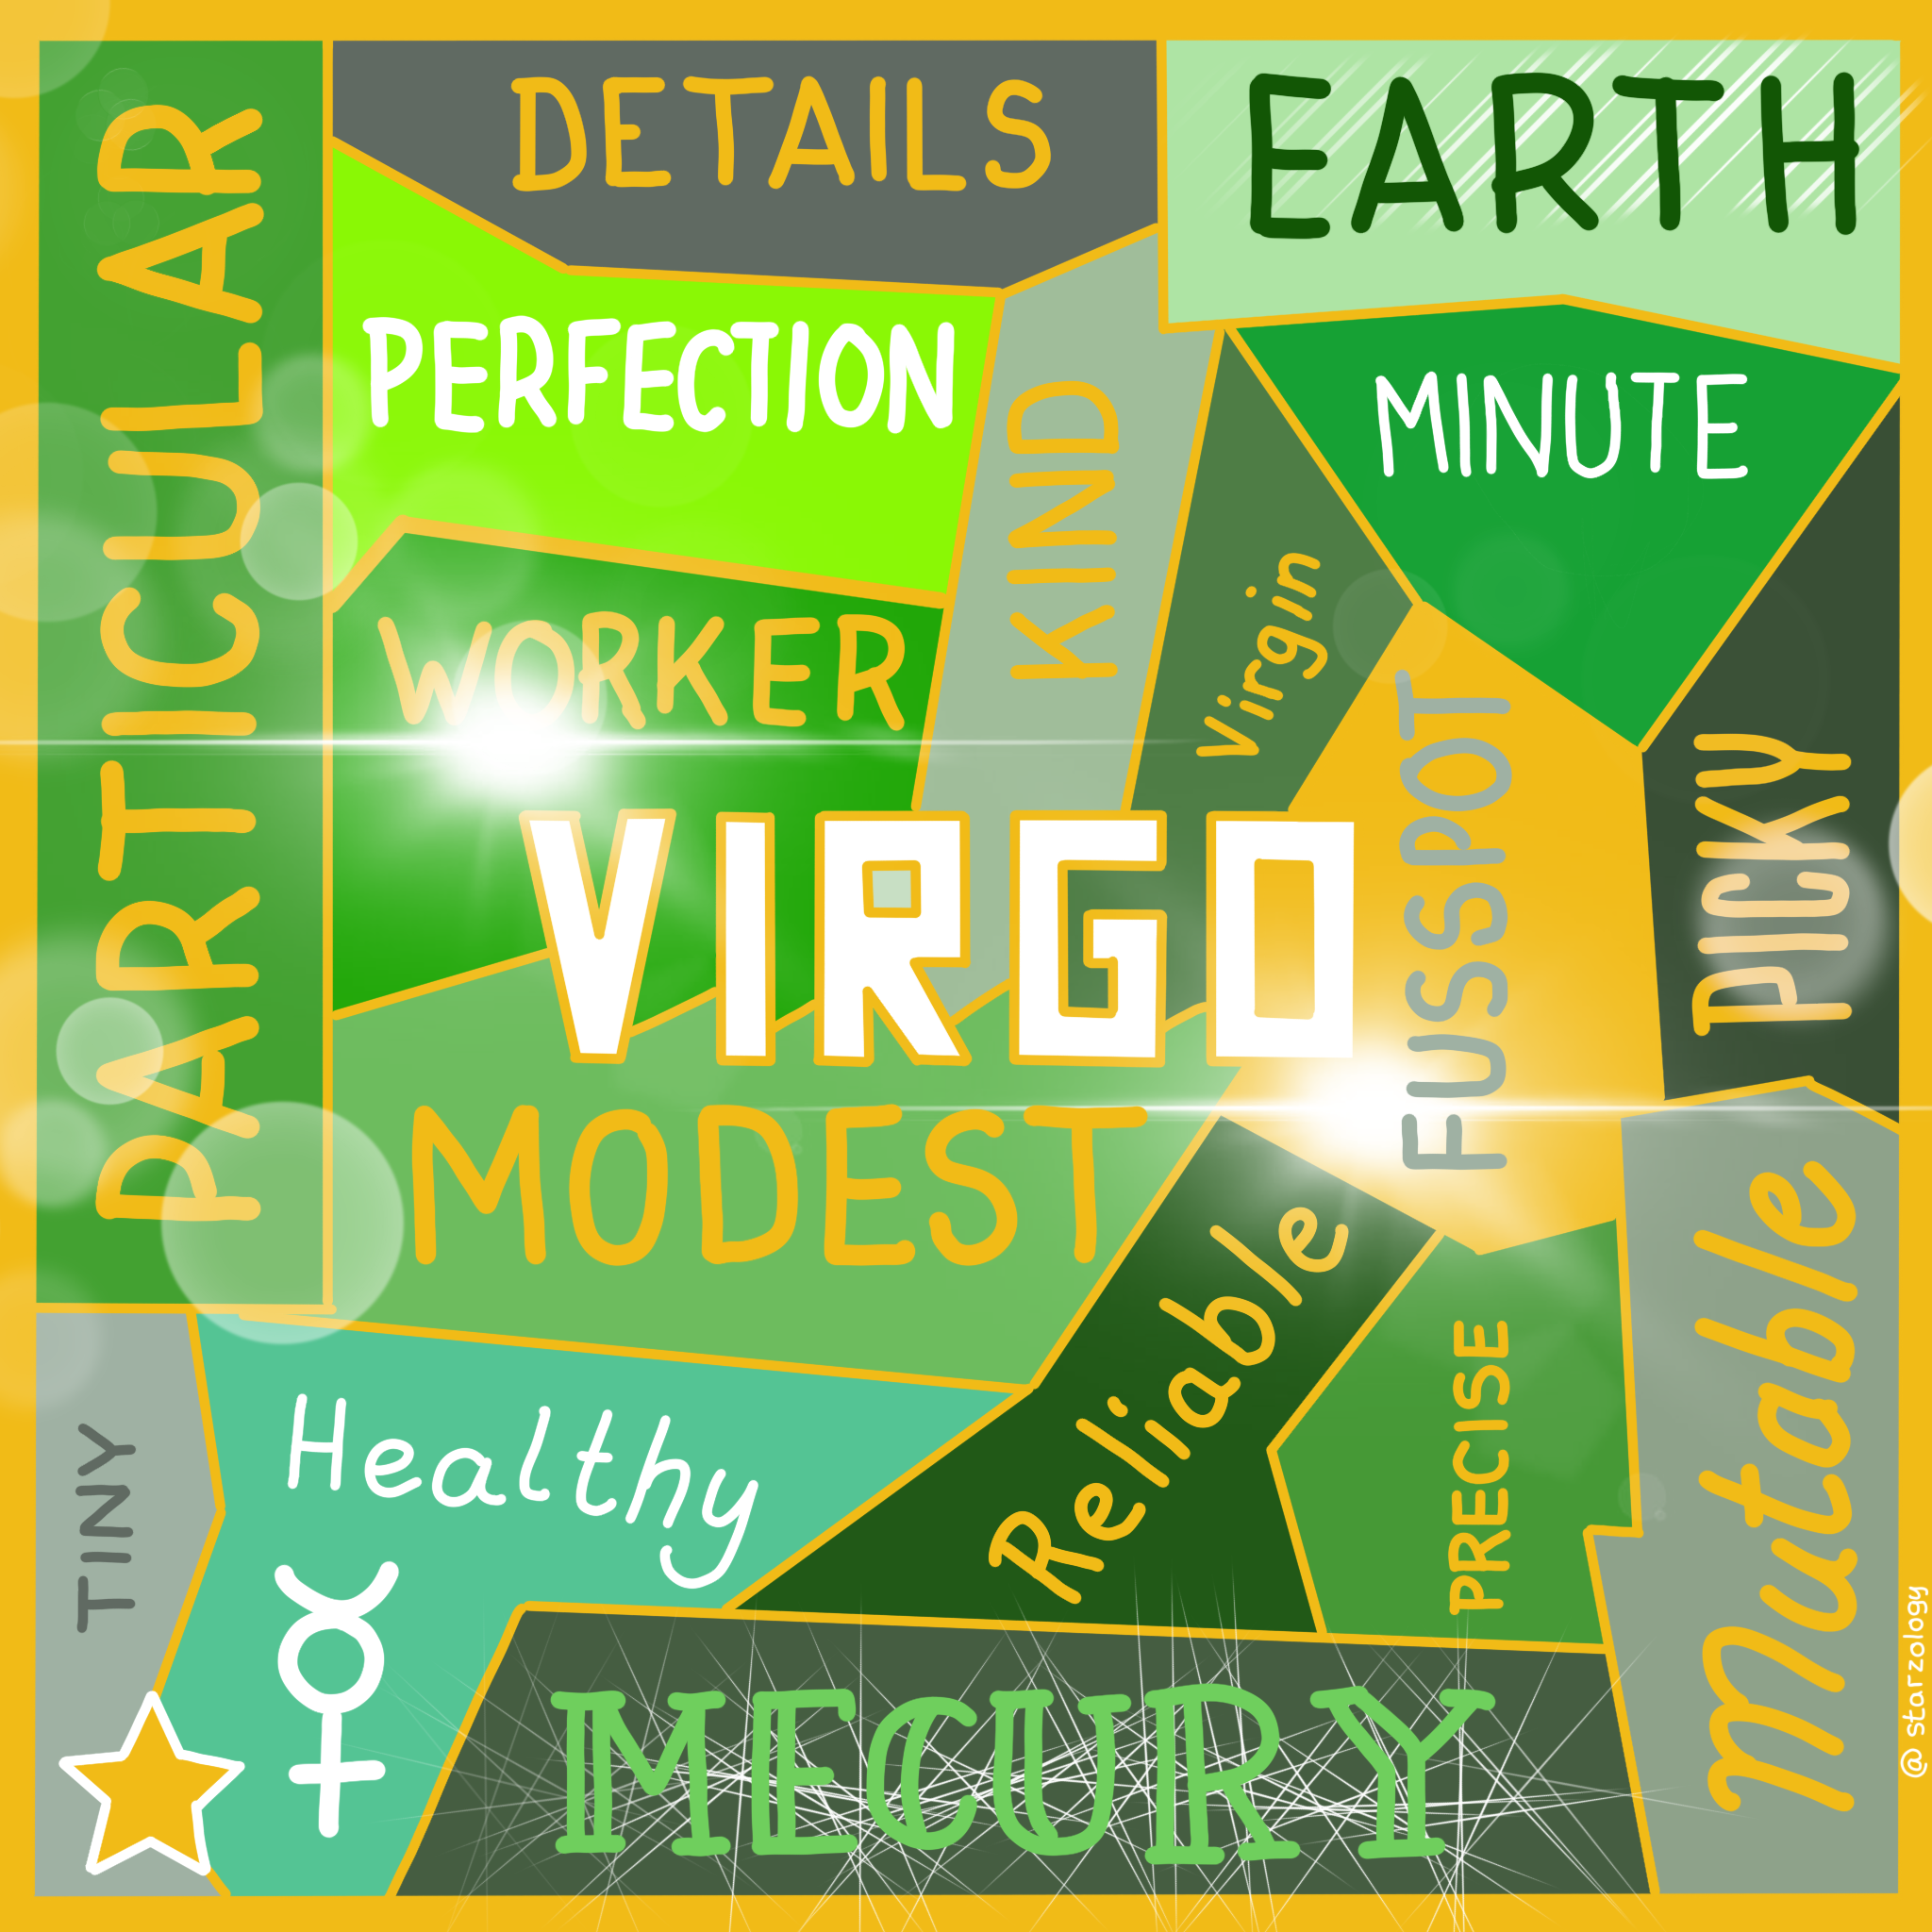 Virgo Horoscopes